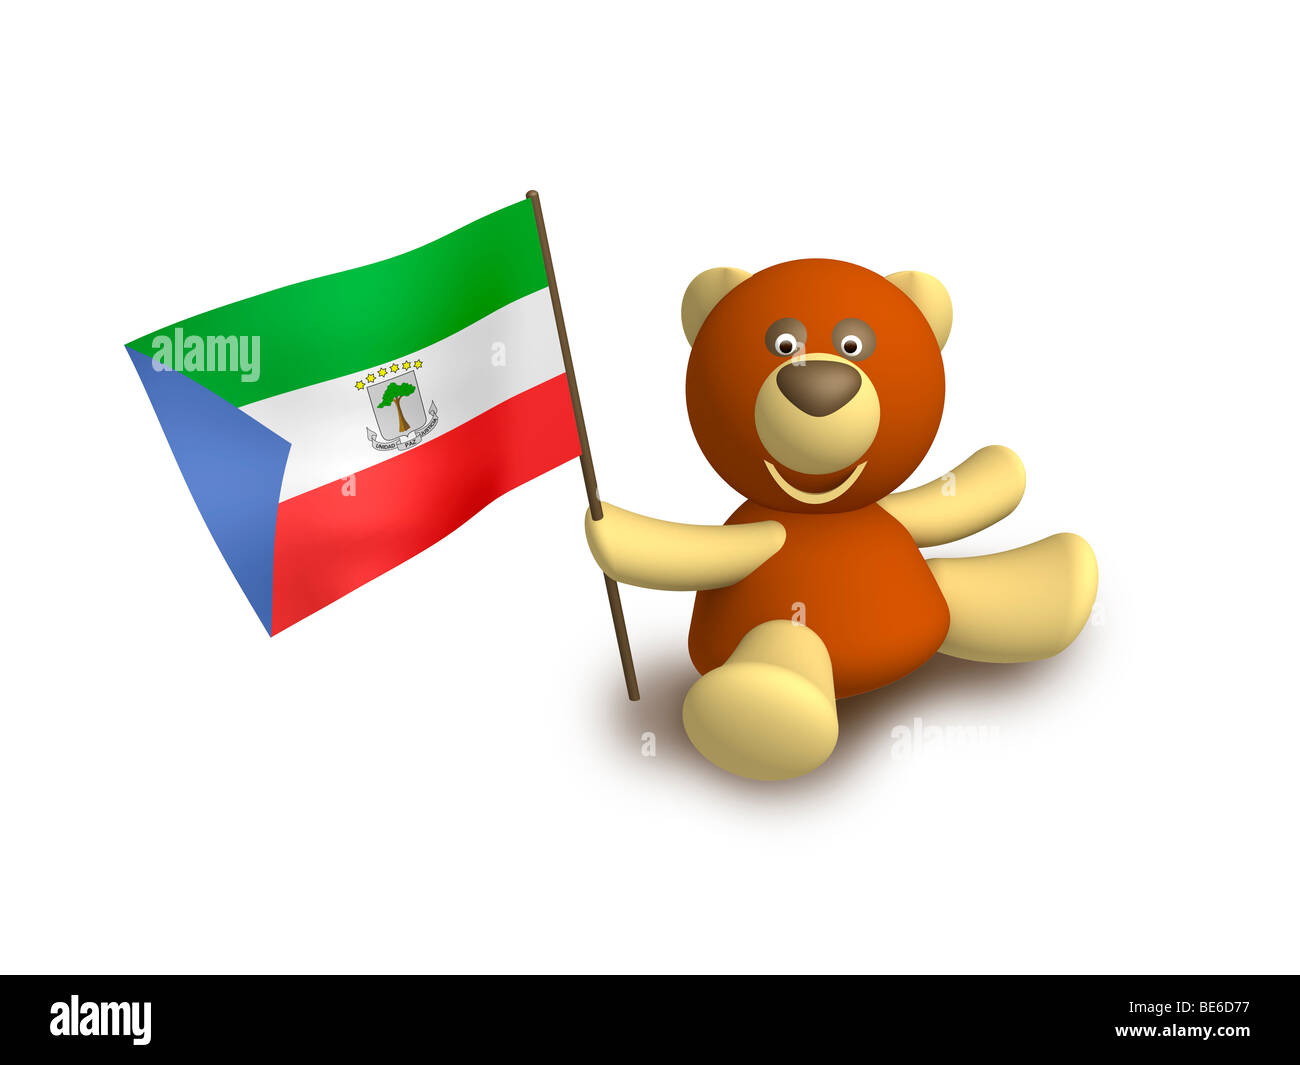 Equatorial Guinea flag Stock Photo